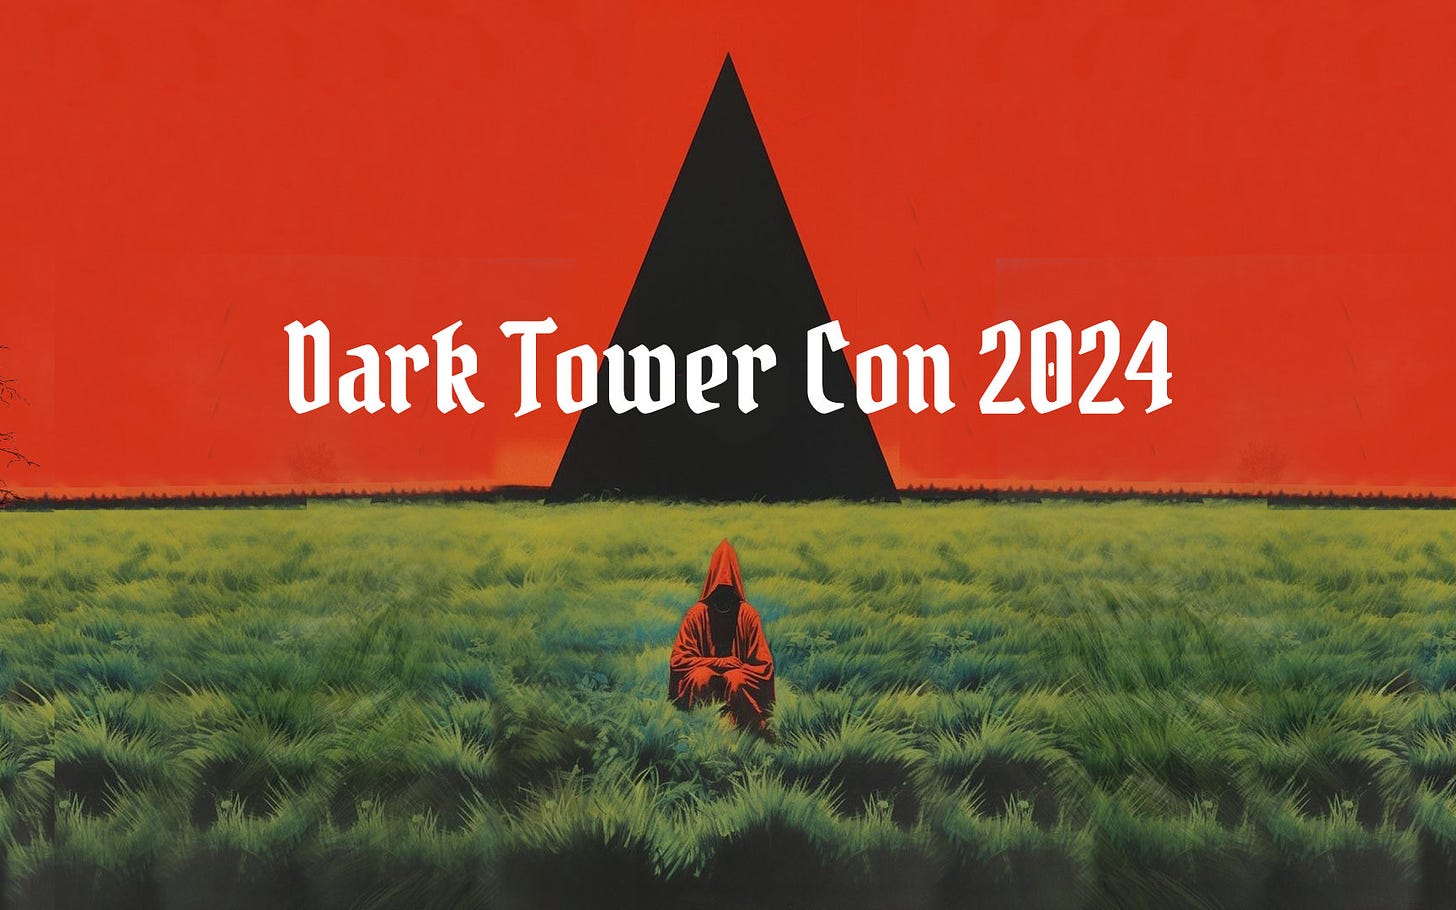 Locandina della Dark Tower Con 2024.